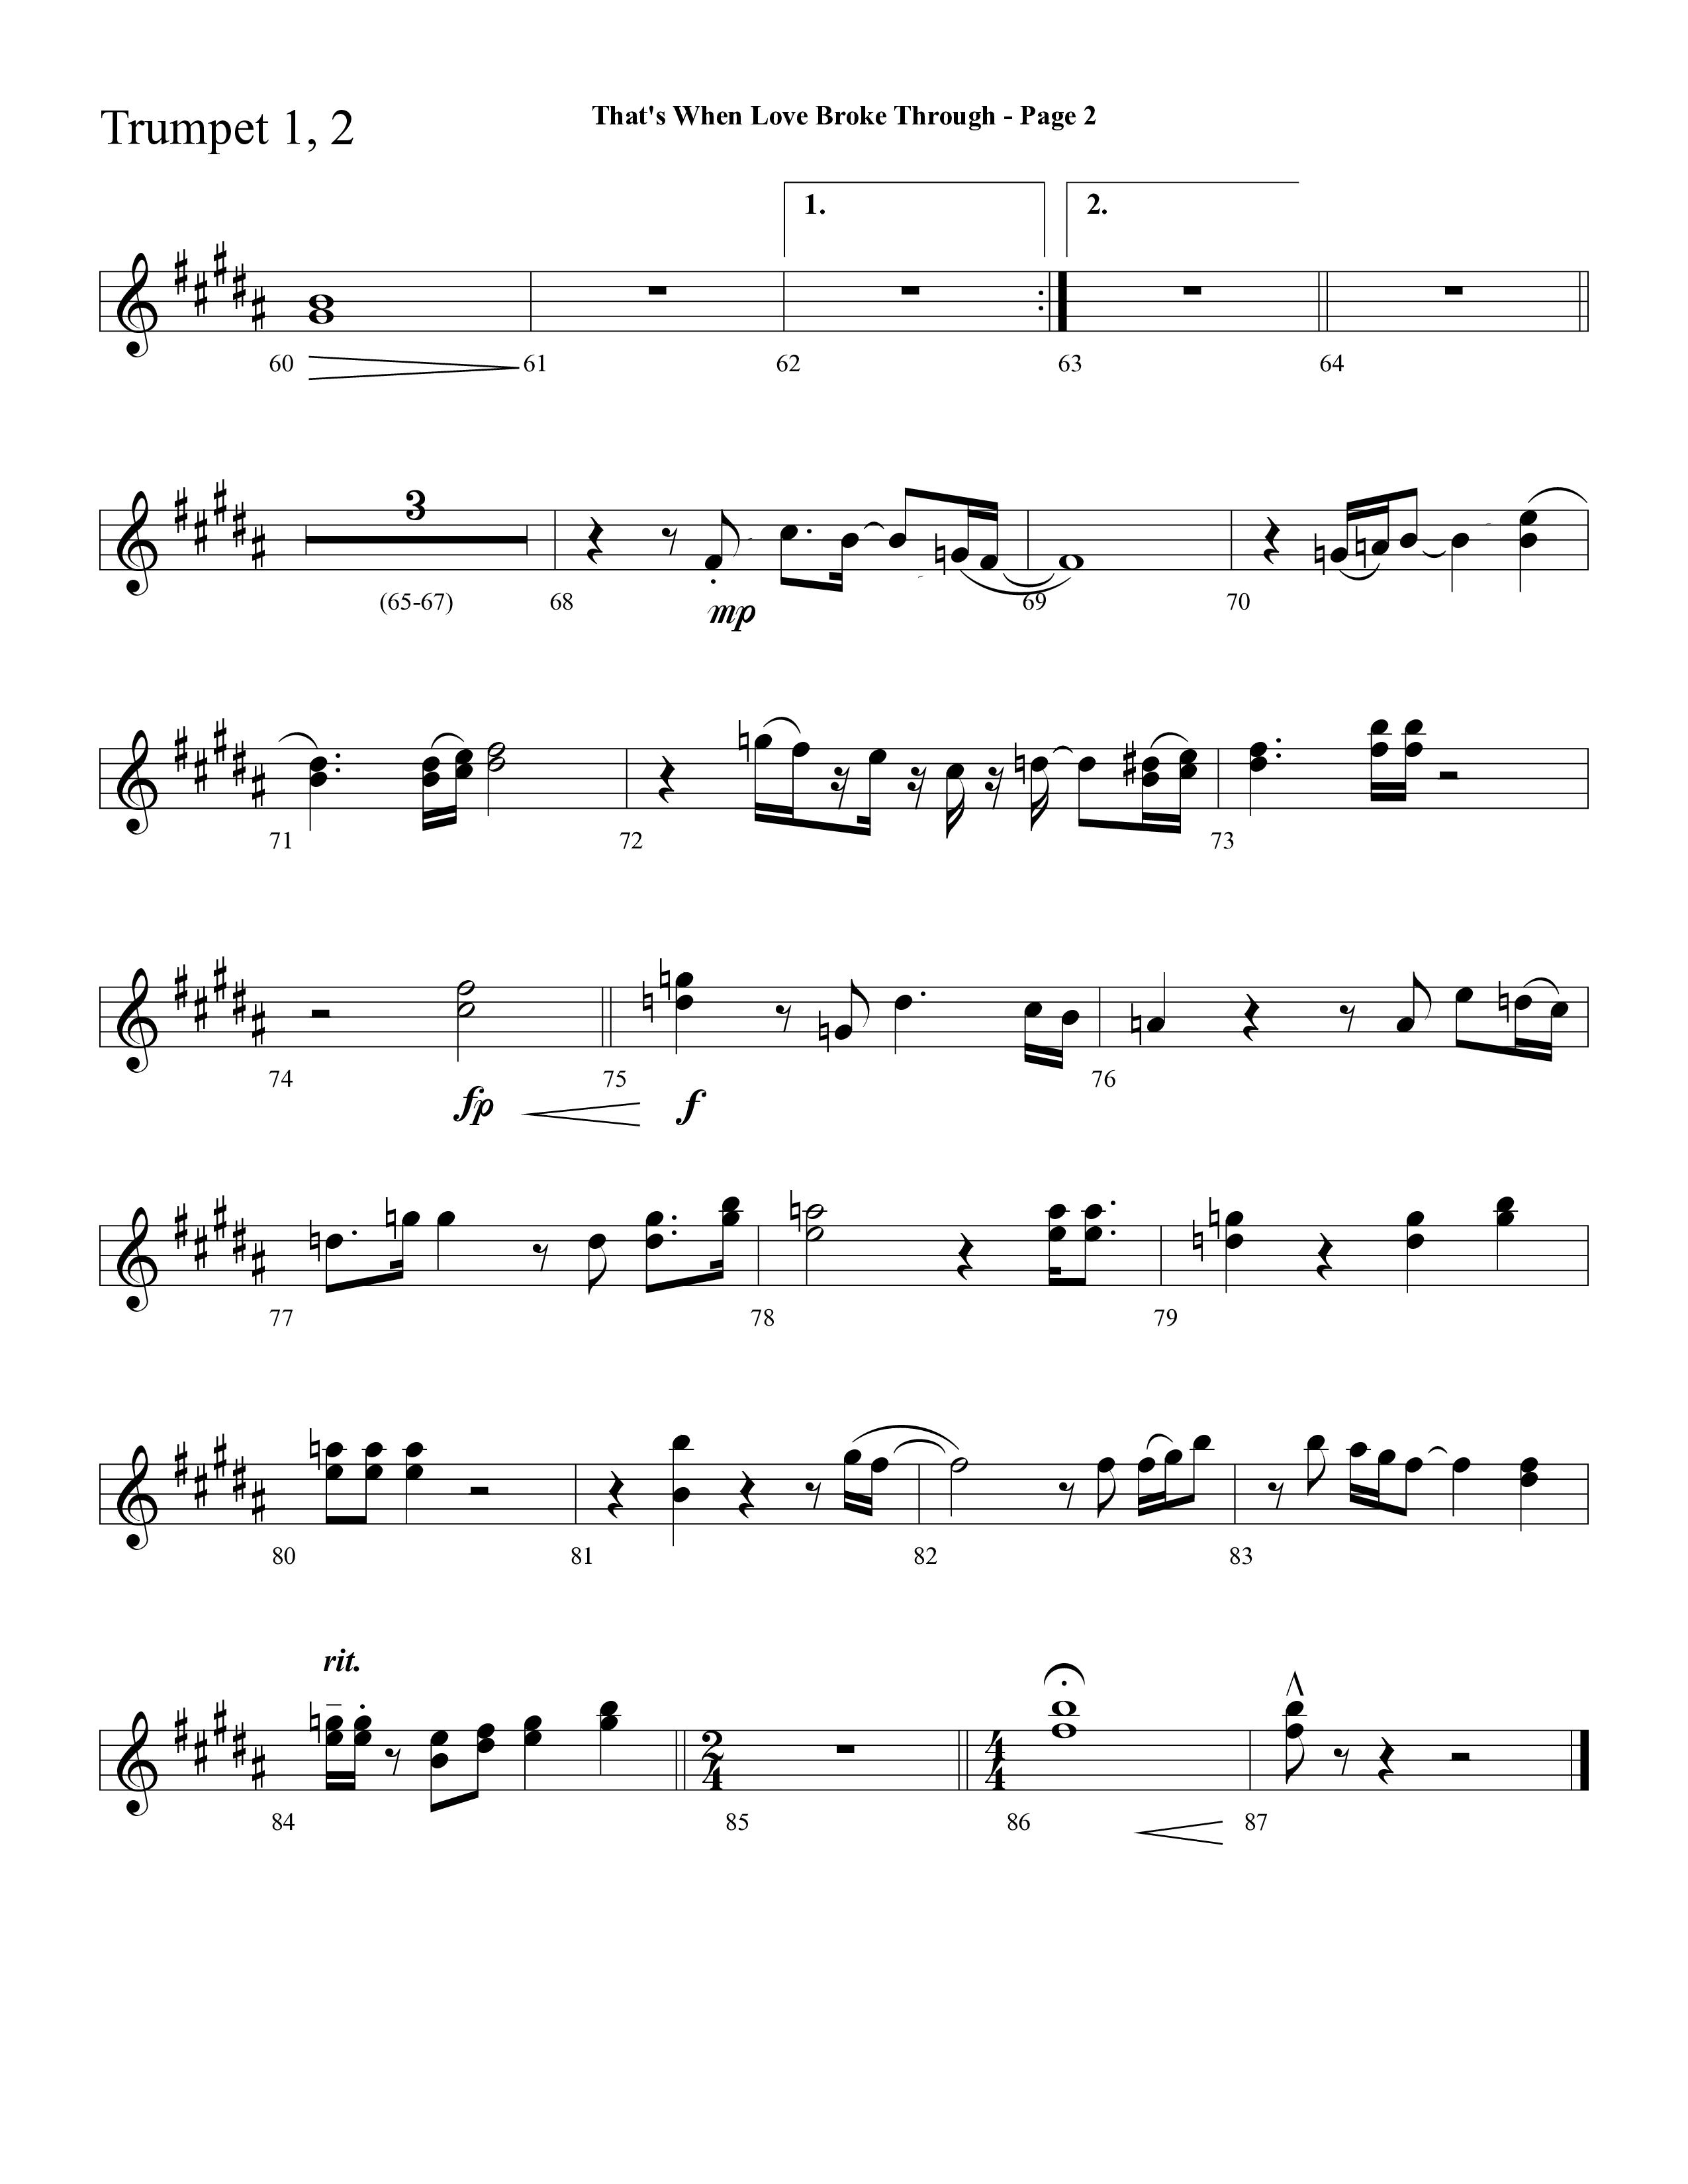 That's When Love Broke Through (Choral Anthem SATB) Trumpet 1,2 (Lifeway Choral / Arr. Mark Willard / Orch. Stephen K. Hand / Orch. Phillip Keveren)